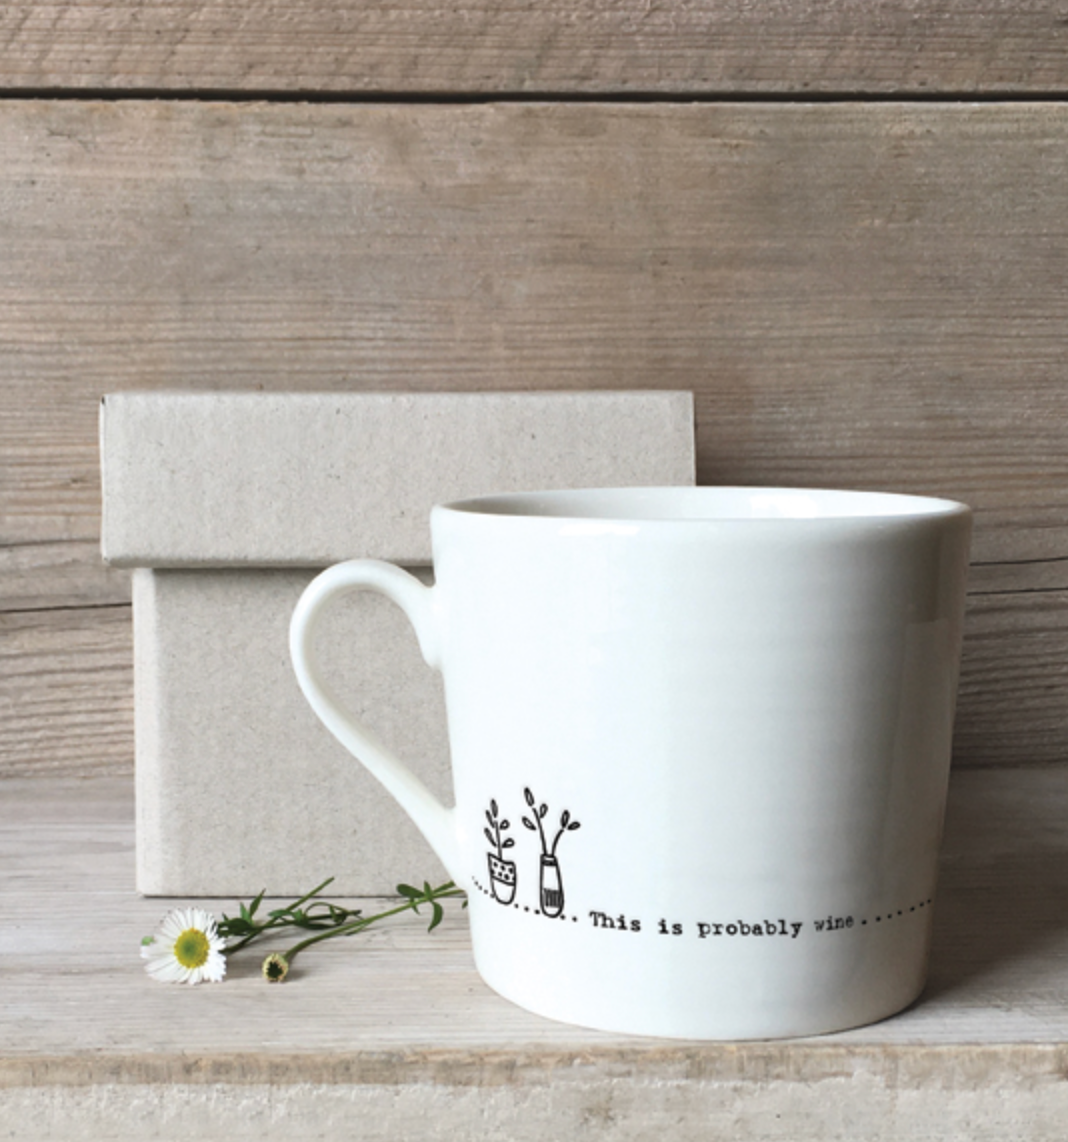 mug for wine drinker gift